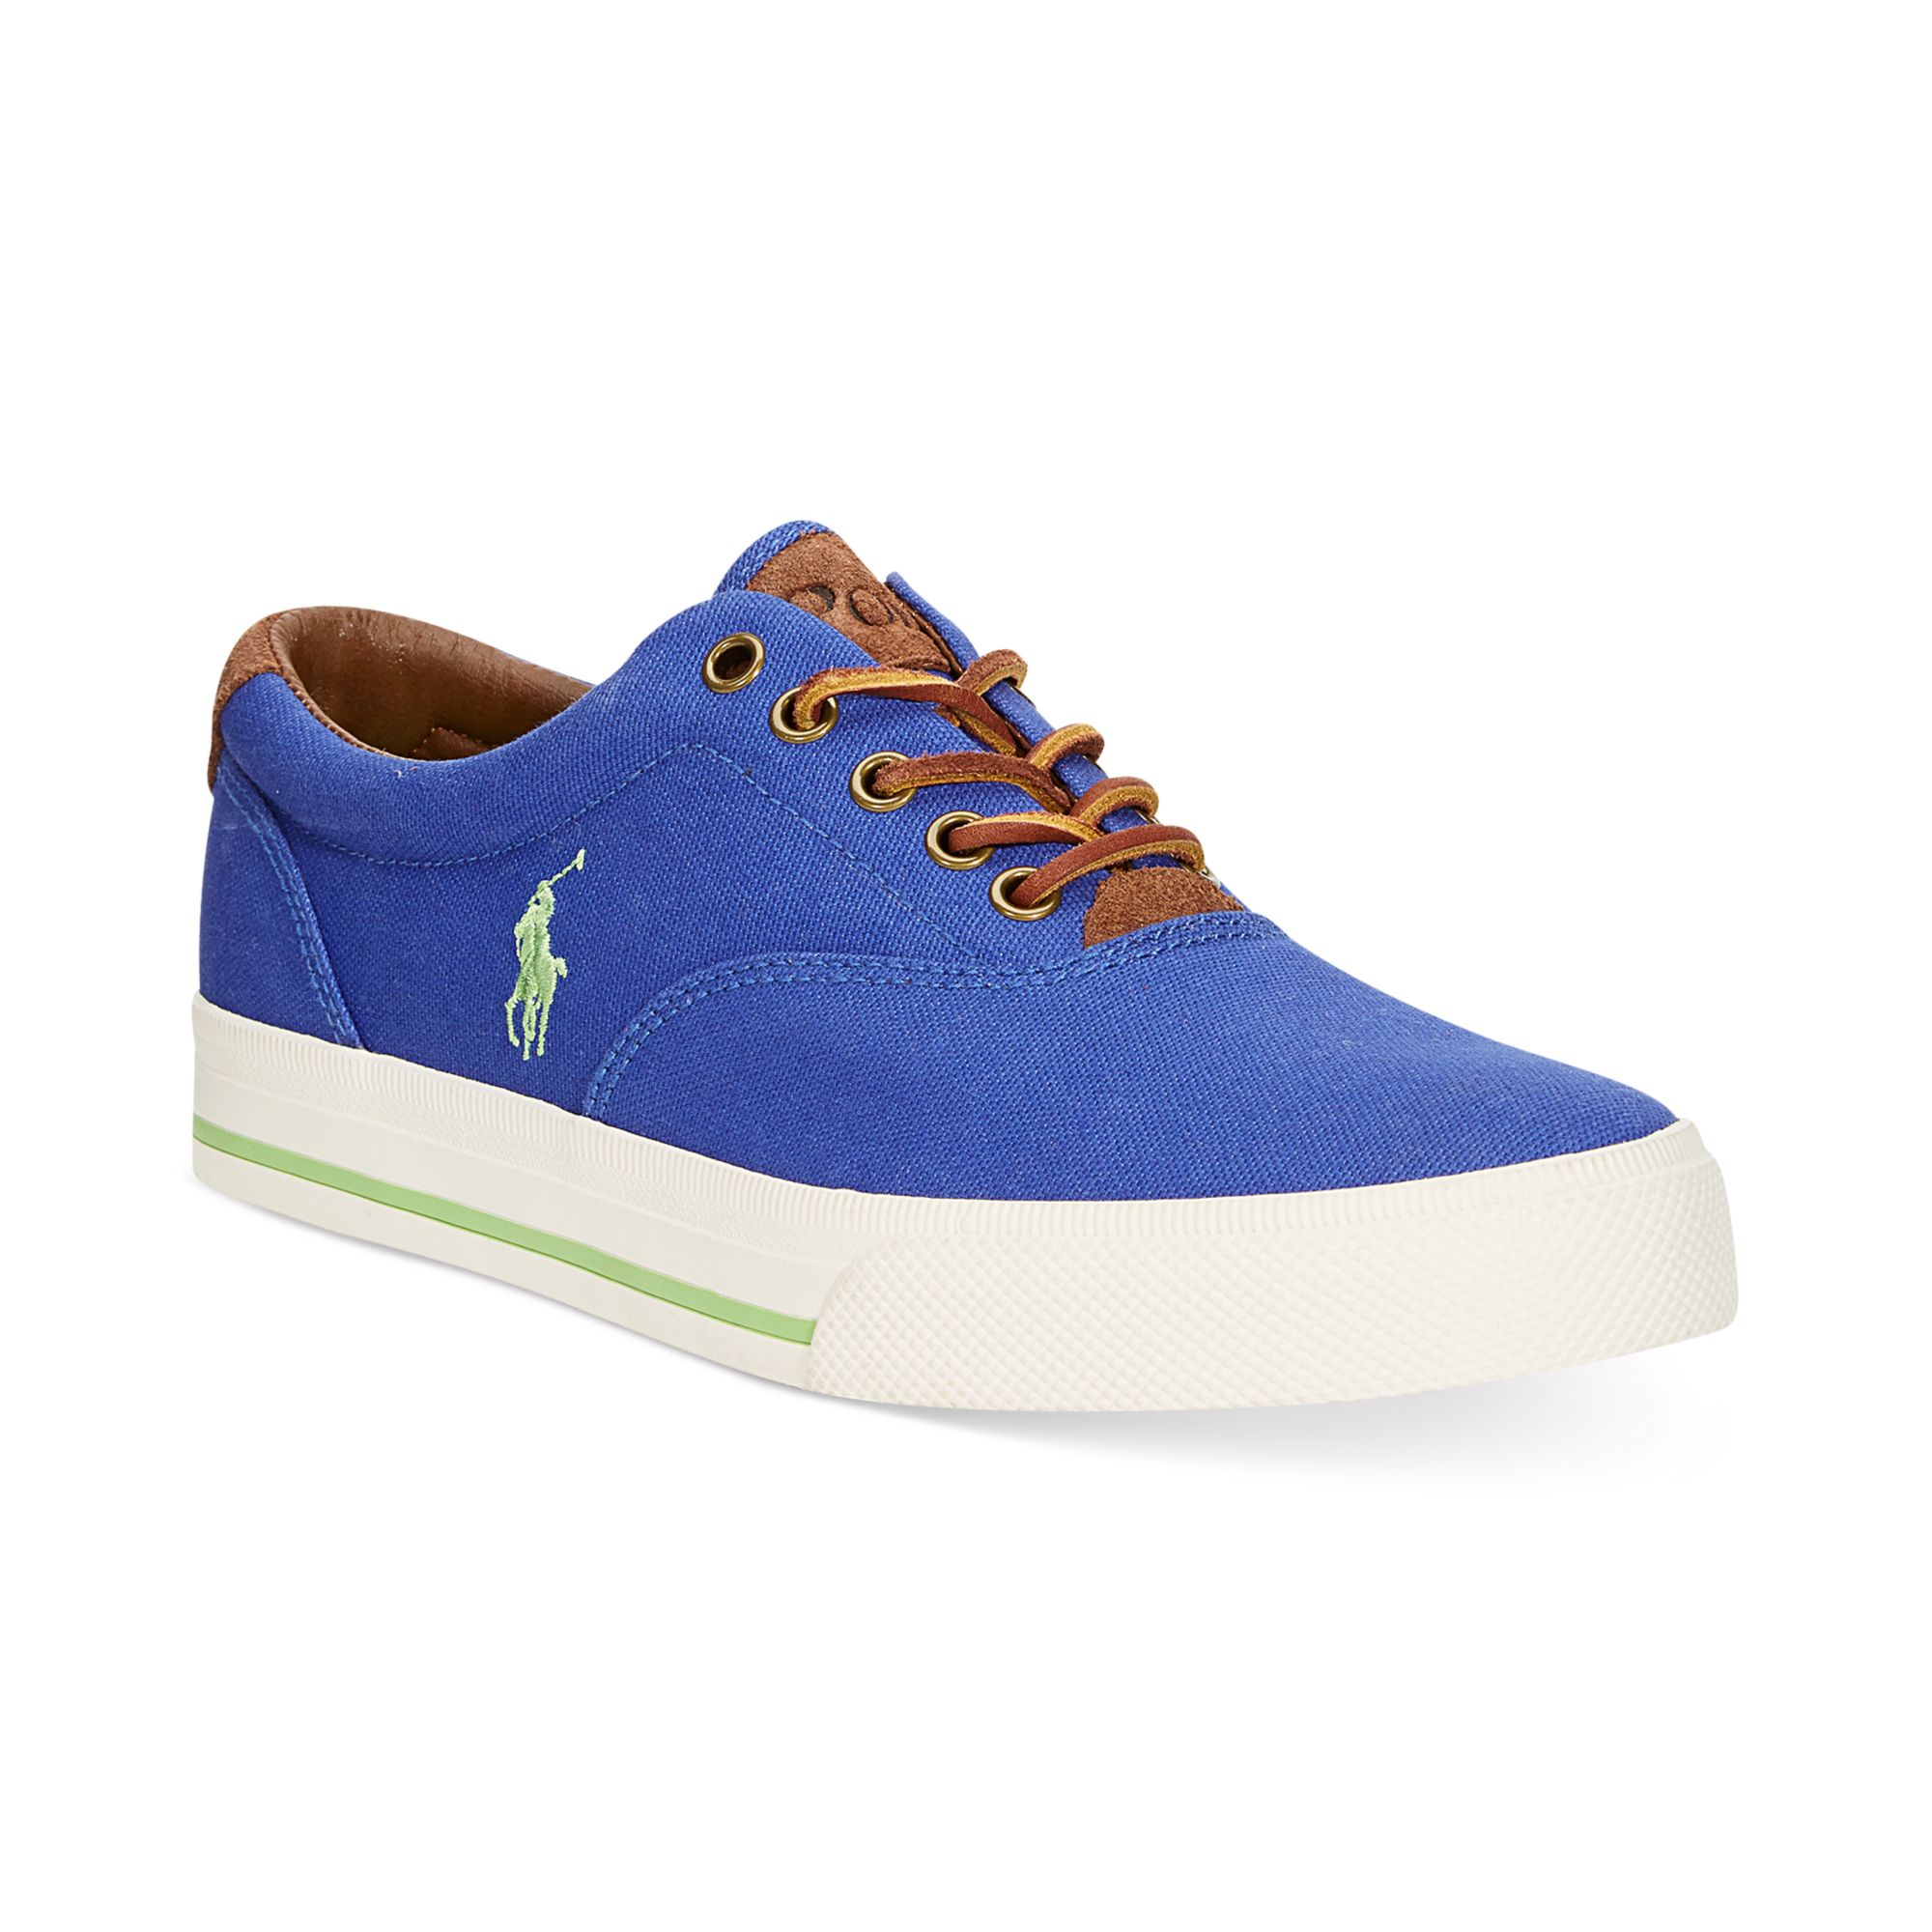 Lyst - Ralph Lauren Polo Vaughn Sneakers in Blue for Men